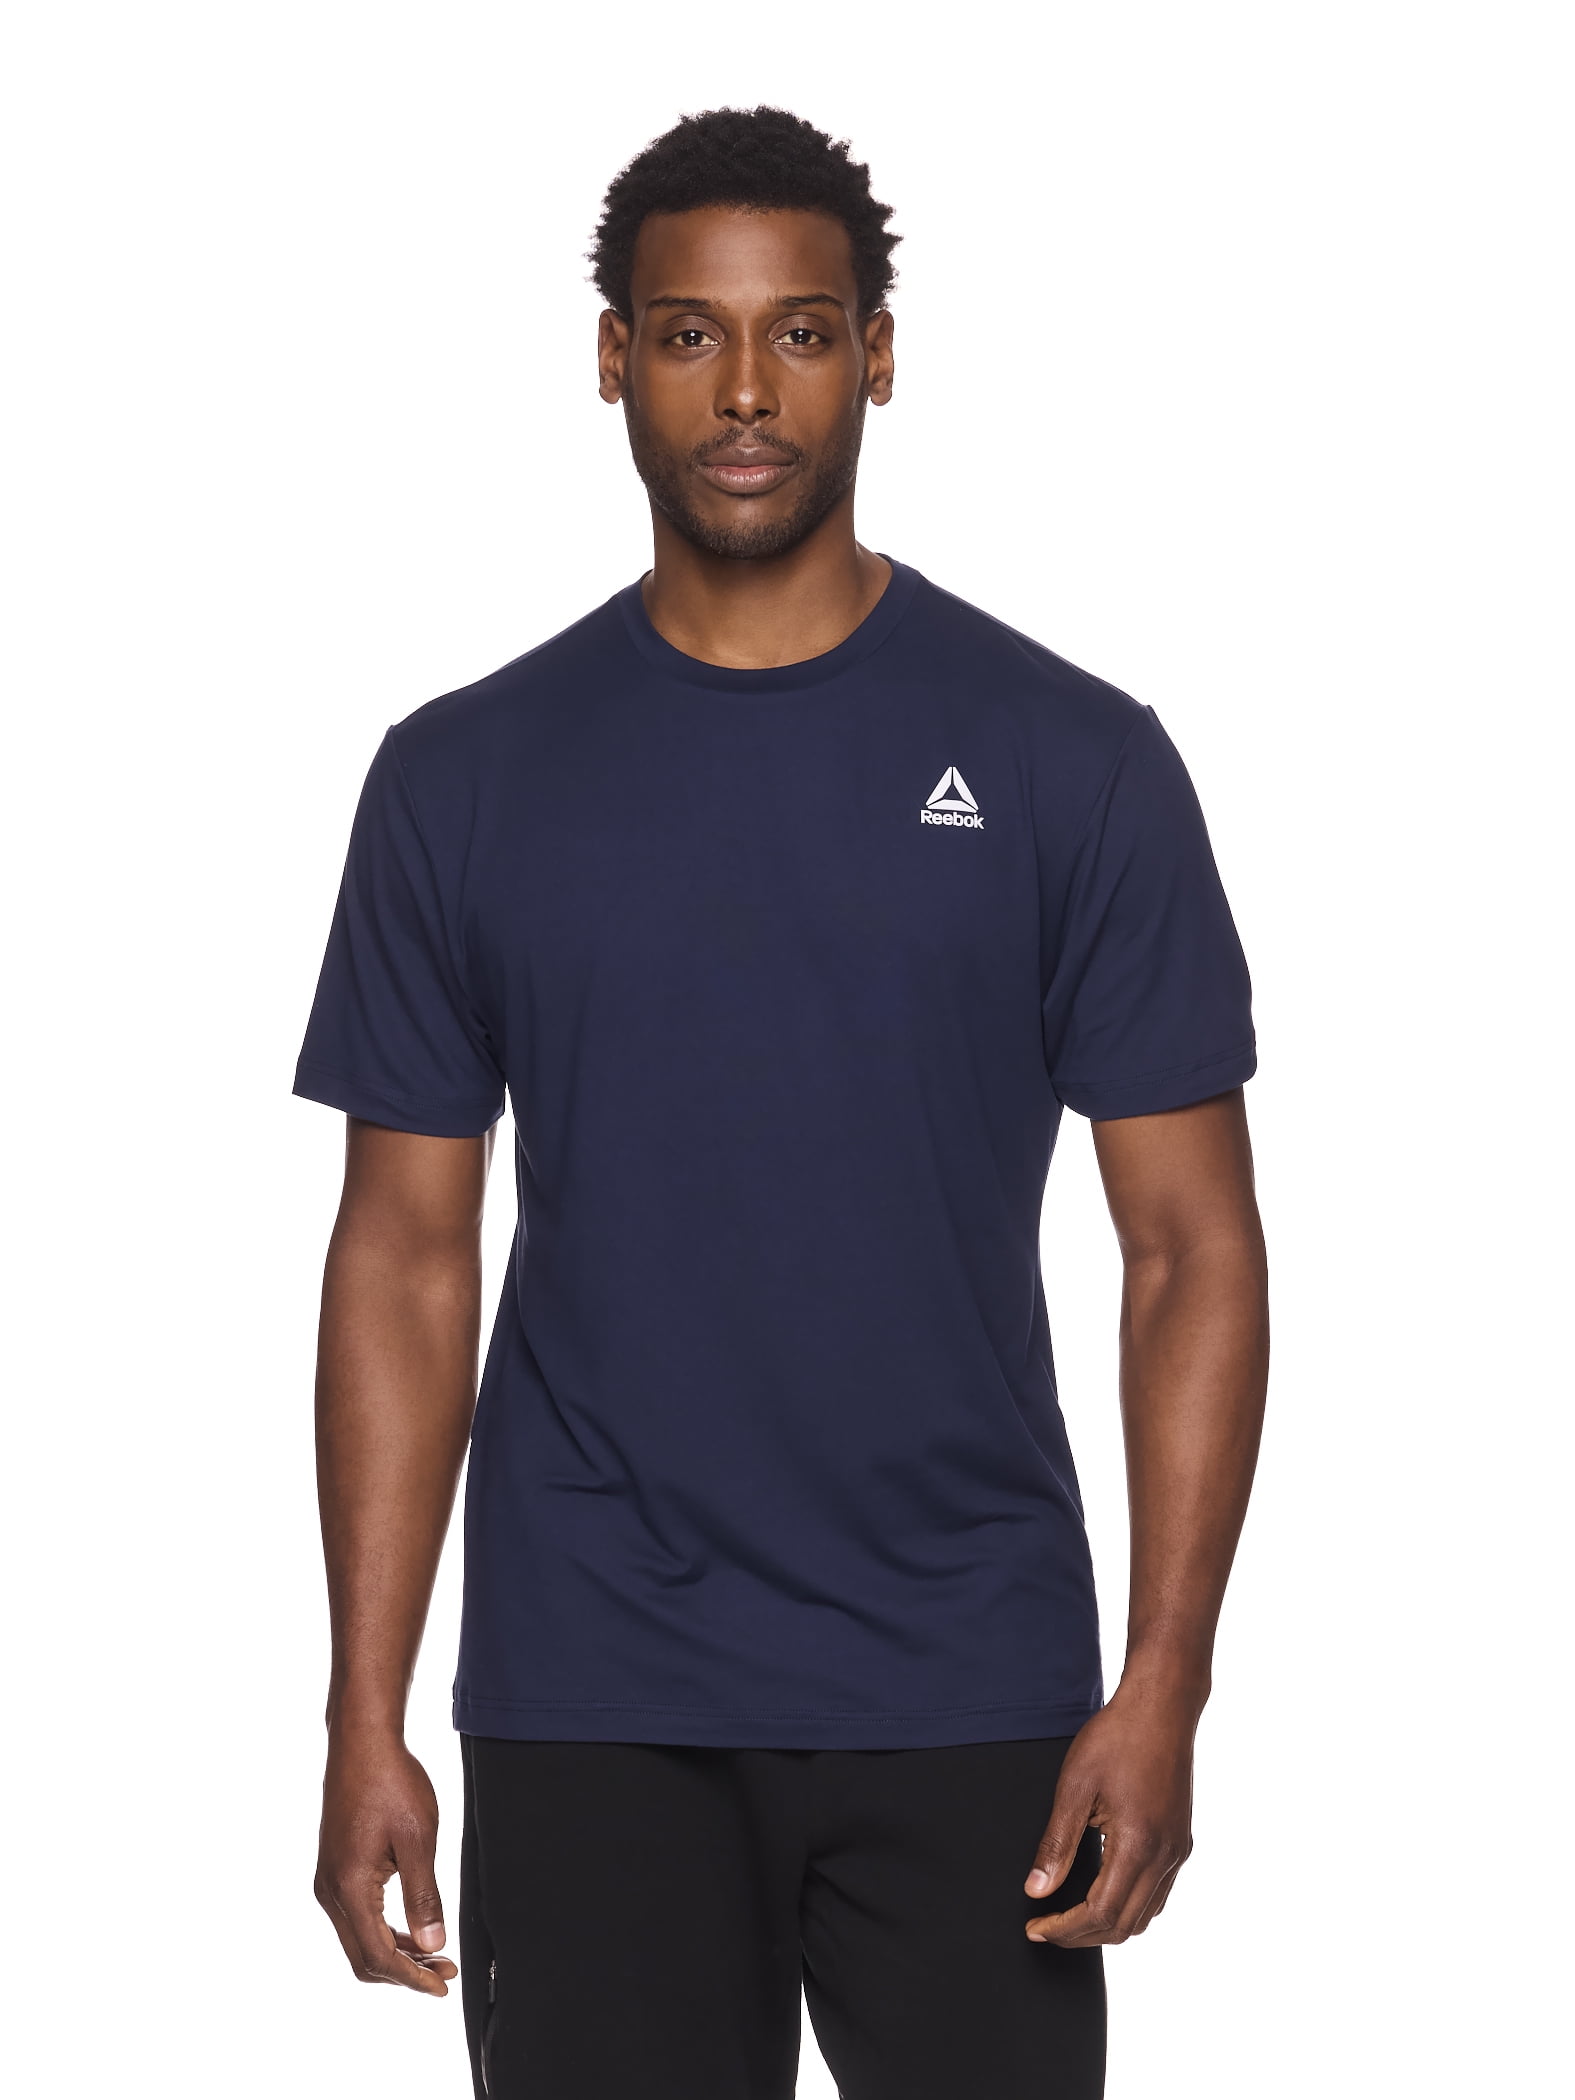 Reebok Men's and Big Men's Delta Core T-Shirt, up to Size 3XL - Walmart.com